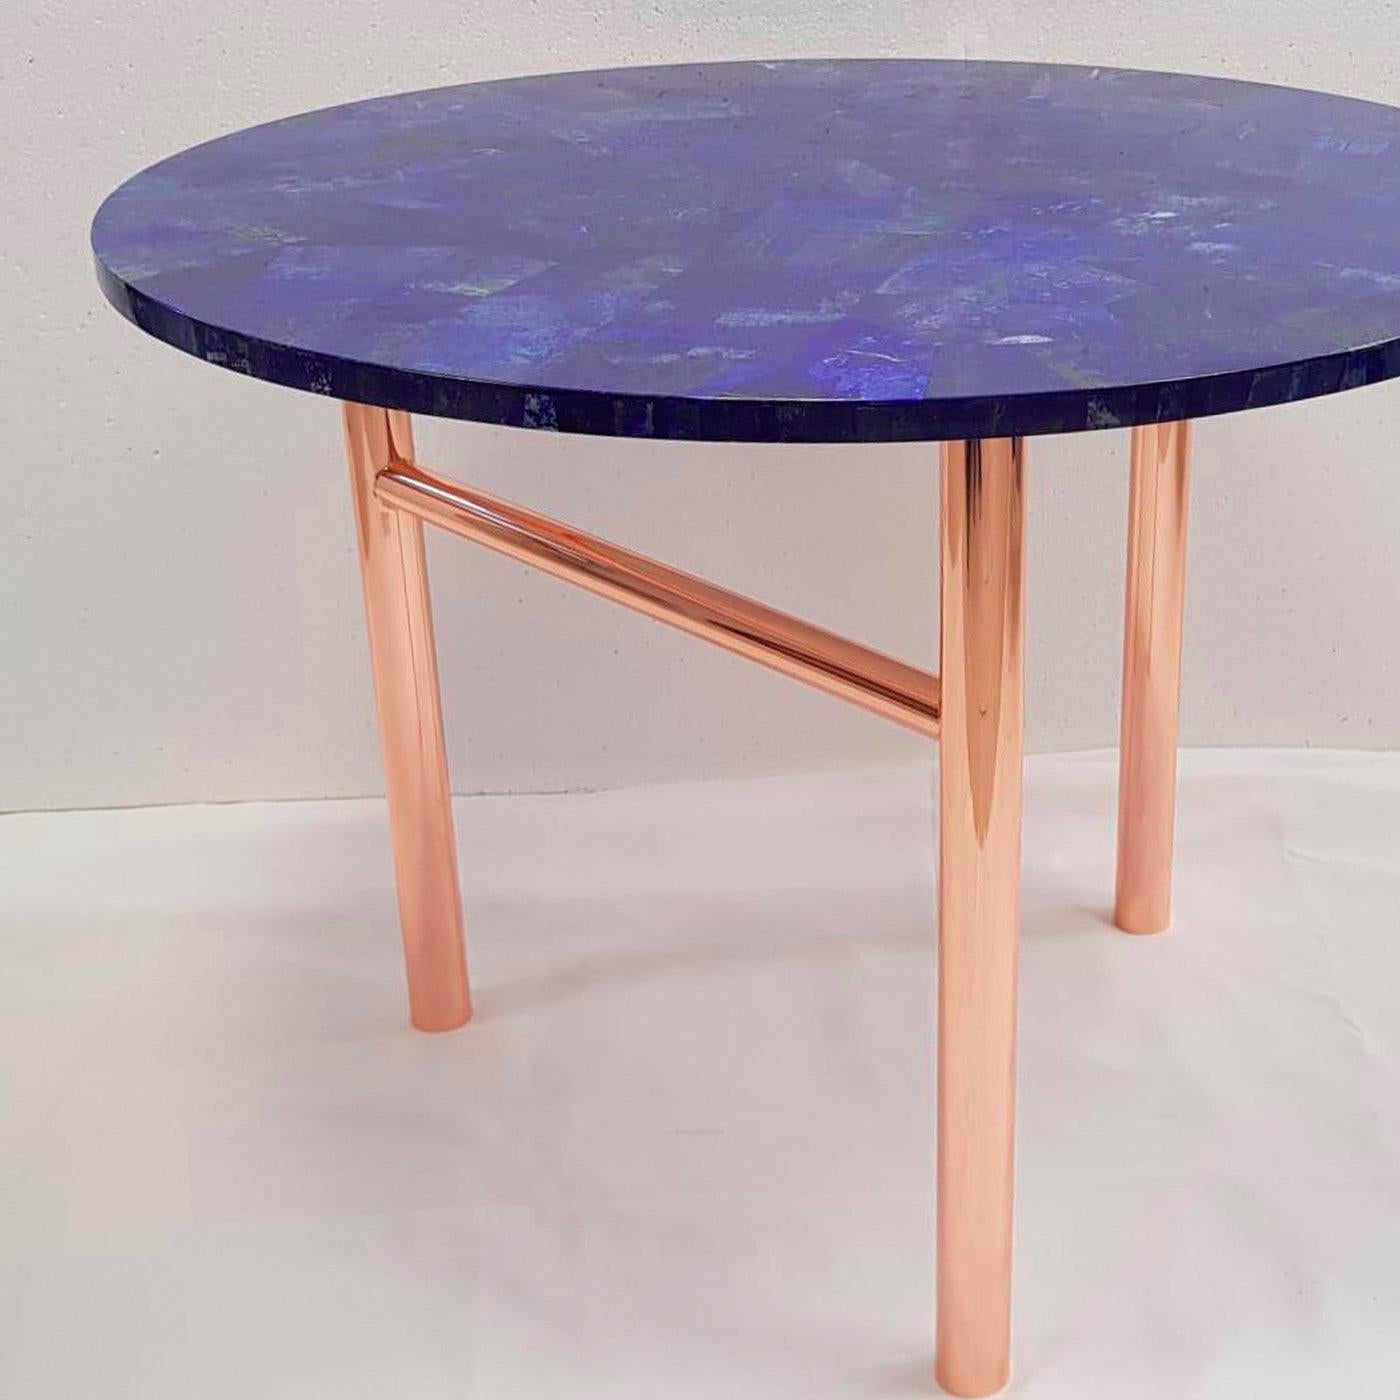 Hergestellt durch eine Mosaiktechnik, bei der dünne Schichten aus kostbarem Lapislazuli-Hartgestein kombiniert werden, um diese undurchsichtige und intensiv blaue runde Platte zu schaffen, zeigt dieser Tisch eine luxuriöse und raffinierte